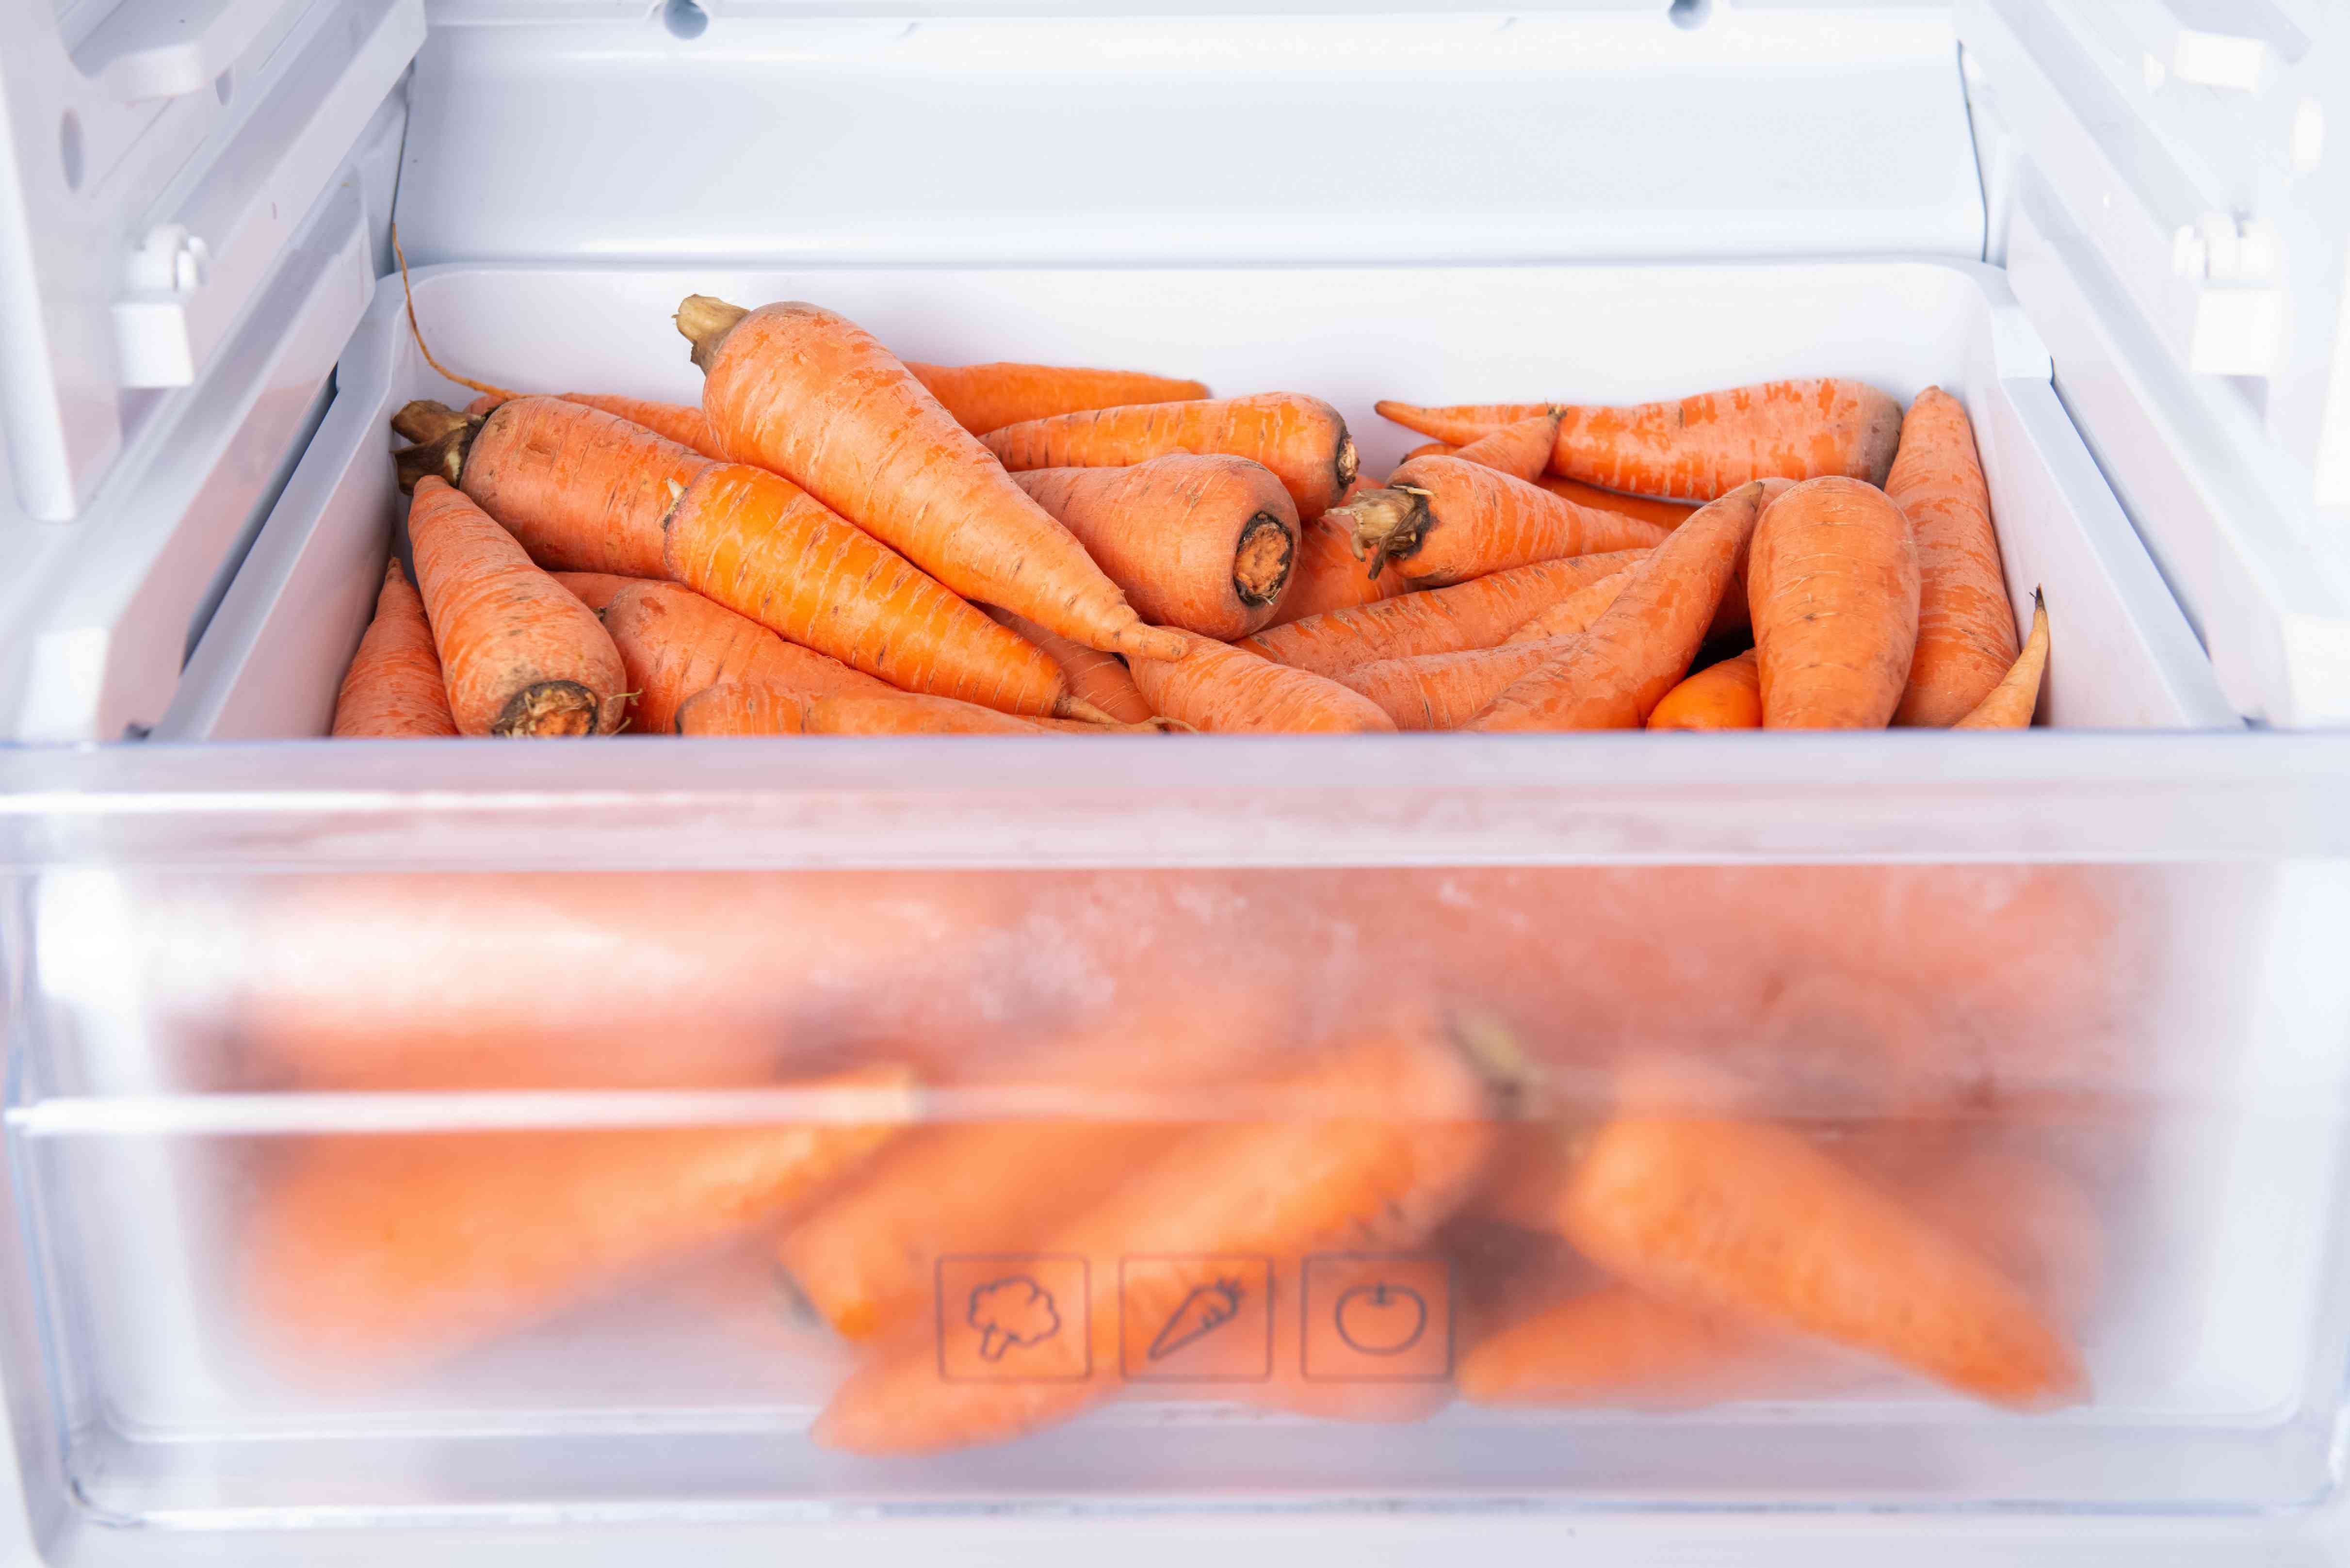 收获的胡萝卜储存在冰箱内的保鲜抽屉里